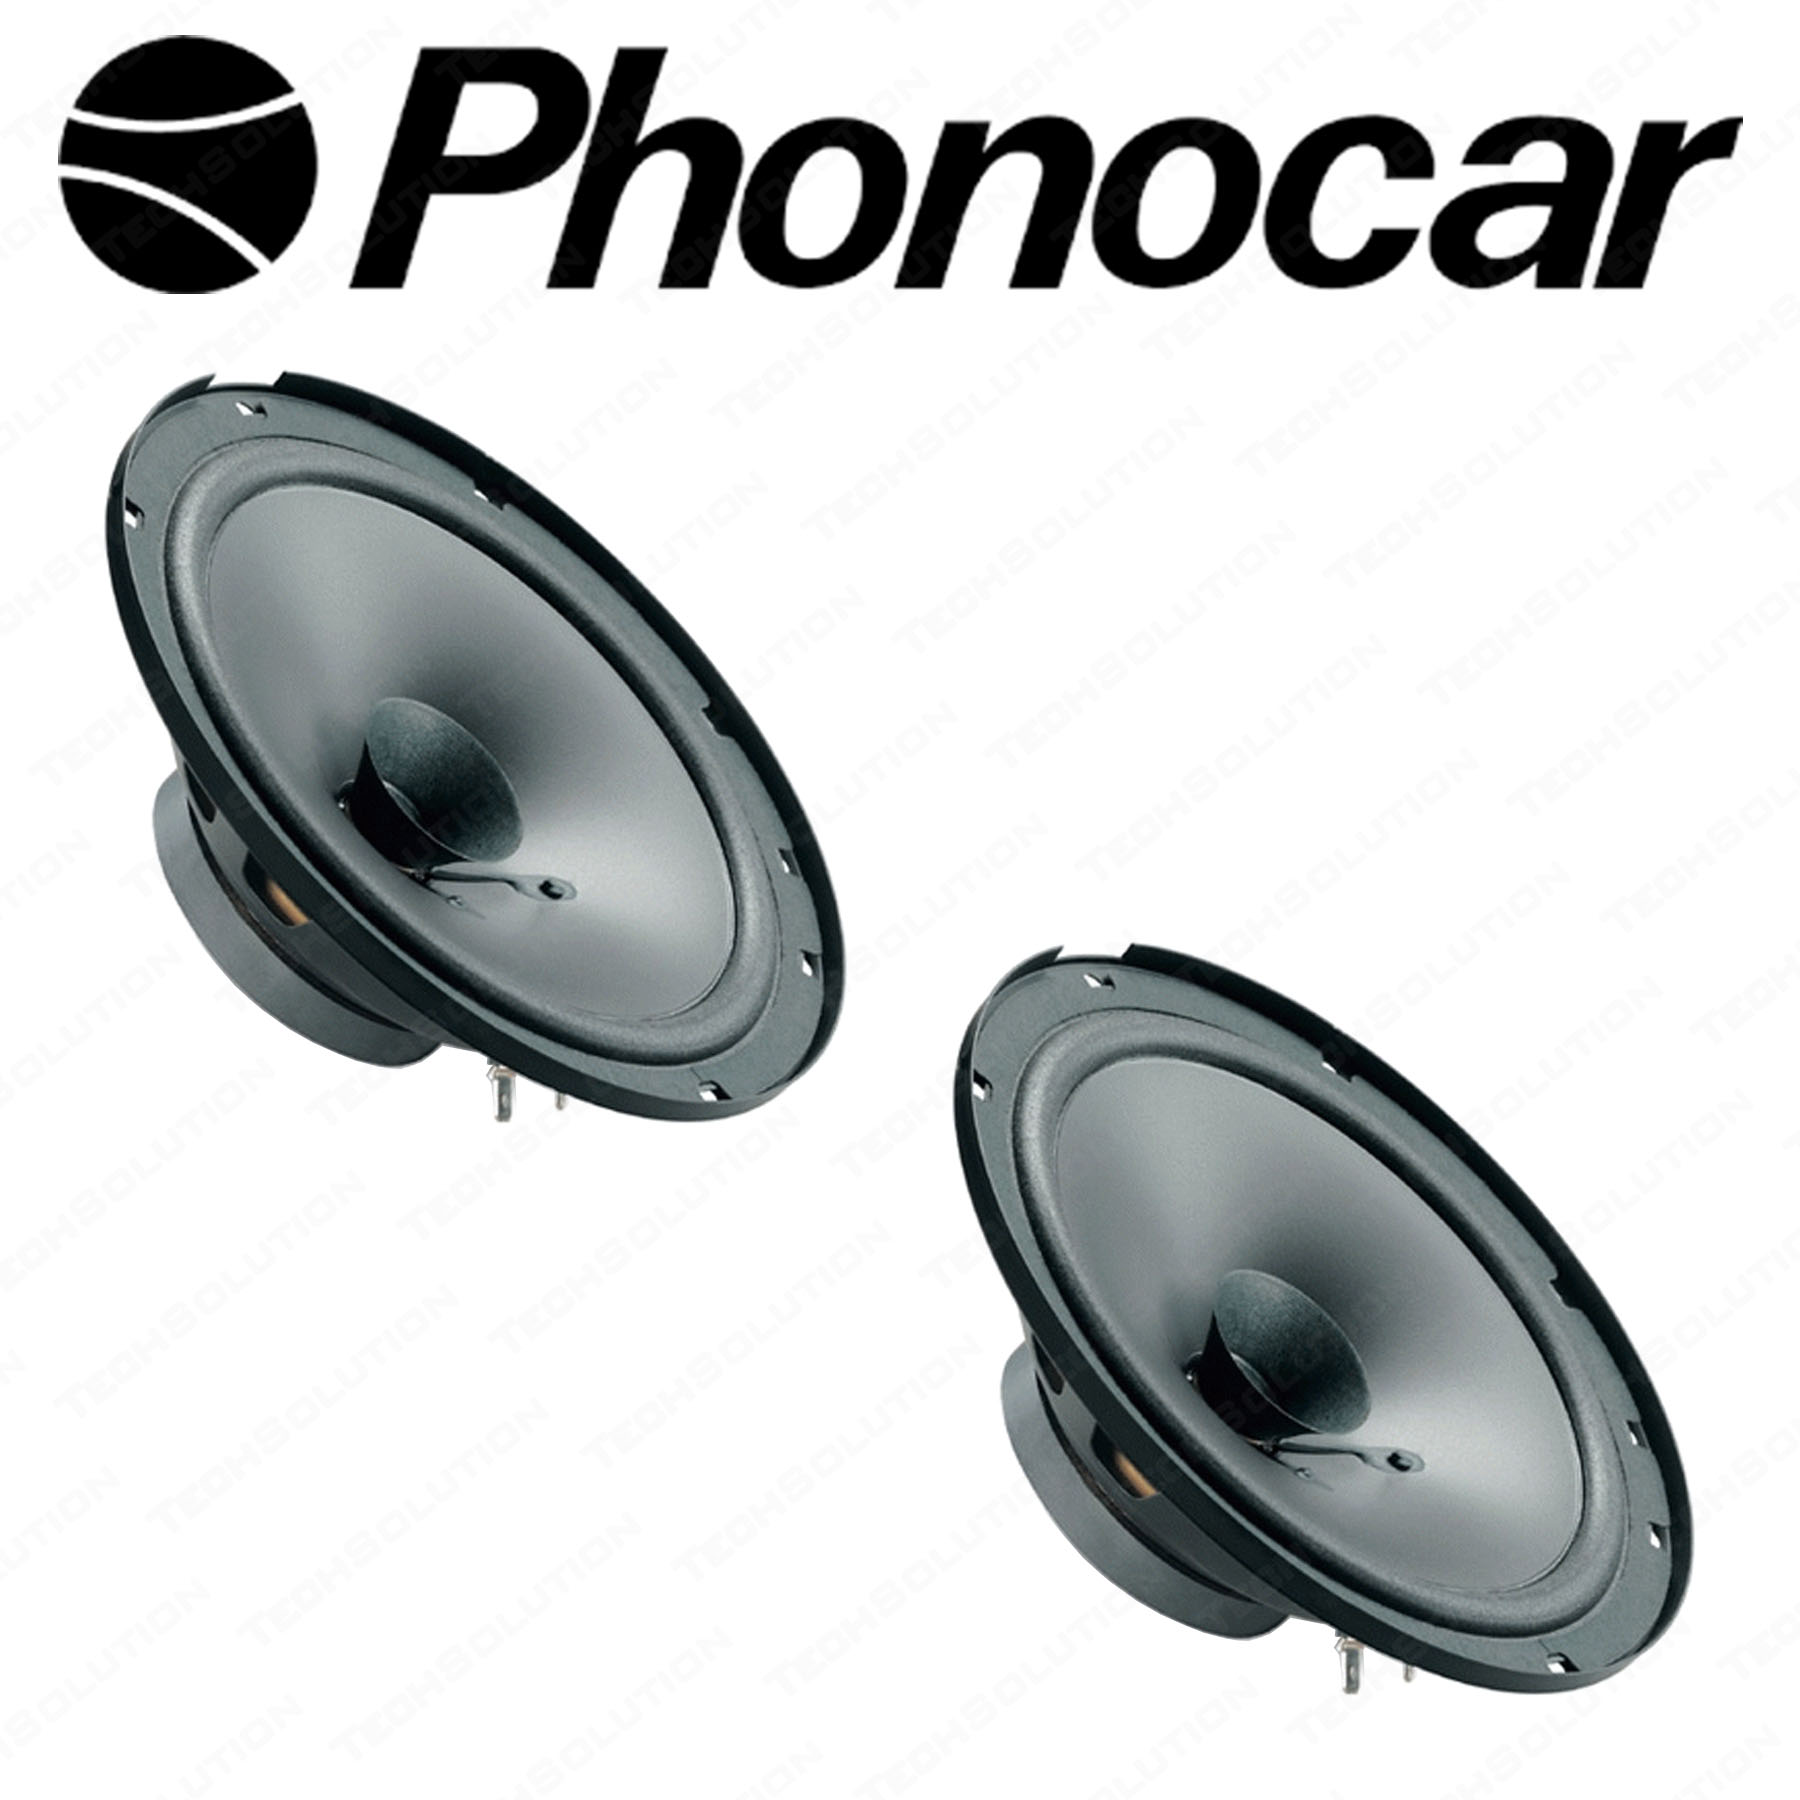 Phonocar 66126 Coppia Casse Woofer 16cm 165mm Altoparlanti Auto Doppio Cono  - Tech Solution